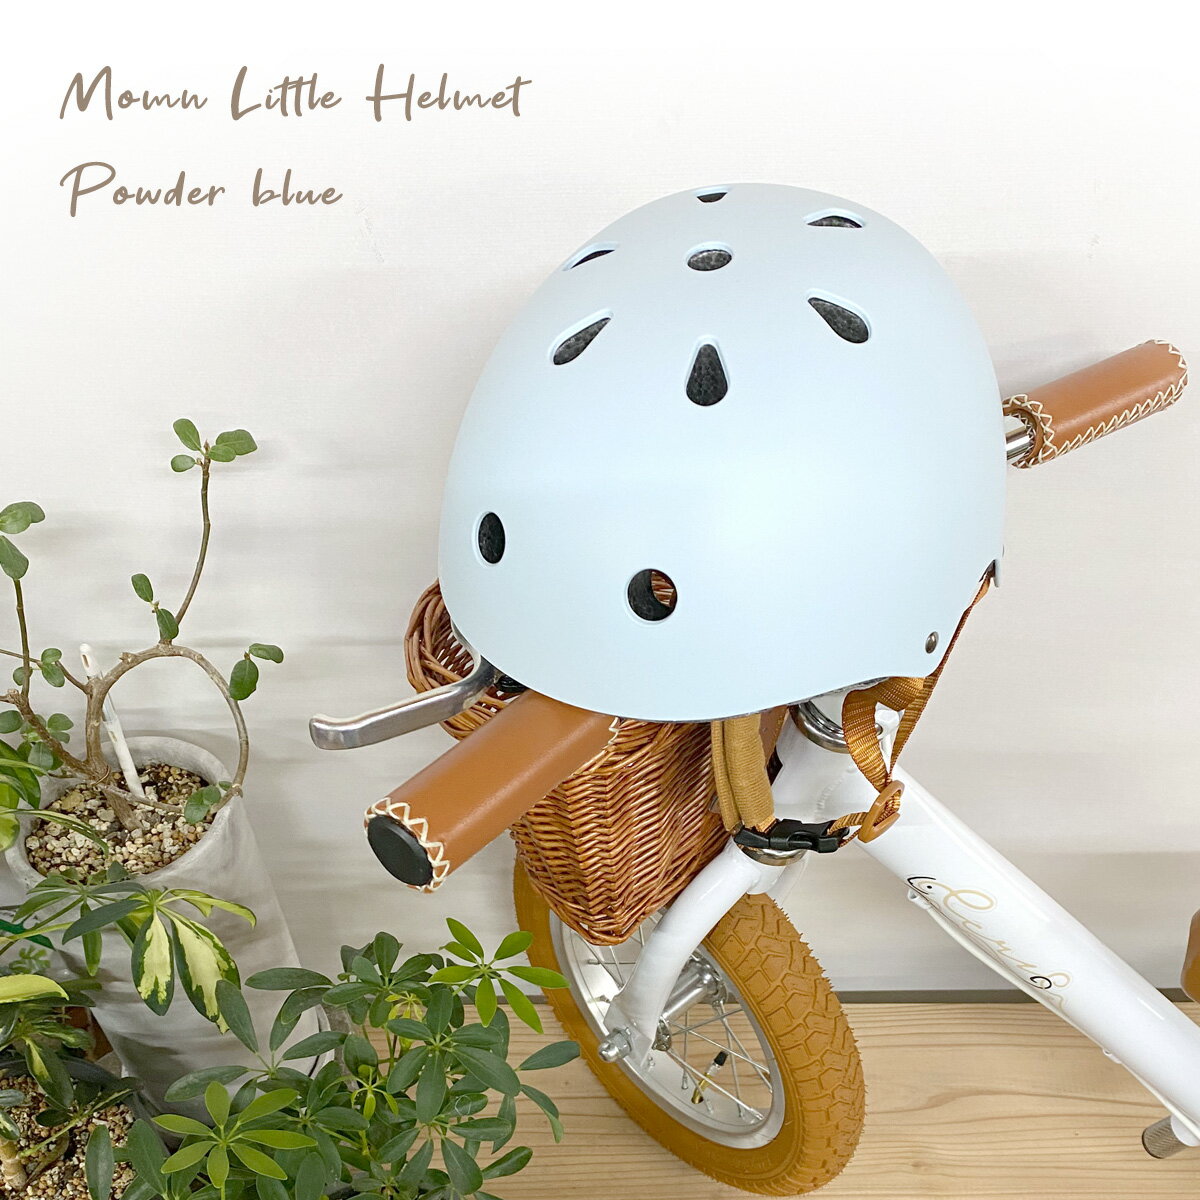 キッズ用 ヘルメット 自転車用 キッズバイク用 52cm〜58cm 仕様 キッズ用のダイヤル調節式ヘルメット 着用の習慣を身に着けることで、子供の安全を守ります ・ダイヤル式で頭のサイズに合わせて調節できます ・あごひもはバックル式 ・あごひもには摩擦防止のソフトカバー付き ※ヘルメットの表面に、加工による若干の凹凸が見られる場合がございます。また、マット加工の性質上、擦れによる光沢が見られる場合がございます。不良品ではございませんので、これらによる返品交換はお受けできかねます。 サイズ 52-58cm ※箱やステッカーに記載の、48〜54cmとの表記は誤りです。お届けする商品は52〜58cmとなります。 重量 約325g 推奨年齢 3〜6歳程 素材 ABS/EPS 生産国 中国 ※国内在庫からお届け 注意点 ◆ご購入前 ・生産ロットや入荷時期等の理由により、色、質感、加工、柄パターン等に差異がある場合がございますのでご了承ください。 ◆ご購入後 ・段ボールやビニール袋は返品・交換・返送の際に必要になります。これらを破棄されますと、返品をお断りさせていただく場合がございますので、お届けした商品の中身の確認が済むまでは念のため10日間ほど保管してください。 ※段ボールやビニール等袋を破棄されますと、不良品であっても対応をお受けできなくなる場合がありますのでご注意ください。 ・商品が届きましたら、お早めに商品のご確認をお願いいたします。 ・商品到着後、1週間を過ぎたご返品や不良品交換対応は基本的にお受けできません。 ・製品の性質上、一度着用した商品の返品、交換はお断りさせていただきます。 ・万が一不良個所があった場合、対象部品の交換で対応させていただきます。部品不良による商品返品はお断りさせていただきます。 ・不良箇所があった場合は拭き取りや修正をする前に撮影し、店舗への連絡時に添付してください。 ・返送いただいた商品に不具合・不足品があった場合は別途費用が発生する場合がございます。 ◆ご使用時の注意事項 ・小さな部品がありますので、お子様が飲み込まないようご注意ください。 ・安全に使用していただくため、ご使用前に必ず製品に破損が無いことを確認してください。 ・ヘルメットは頭にぴったり収まるように正しく着用してください。大きすぎたり小さい場合、安全性が十分ではなくなります。 ・ヘルメットの位置がずれないように、あご紐を適切な長さに調節してください。 ・故障あるいは損傷している部品を発見した場合は、すぐにご使用をおやめください。 ・一度でも大きな衝撃を受けたヘルメットは、衝撃吸収性が著しく低下しますので、外観に損傷がない場合でも使用しないでください。 ・バックルは必ず正しく留めてください。 ・火気に近づけないでください。